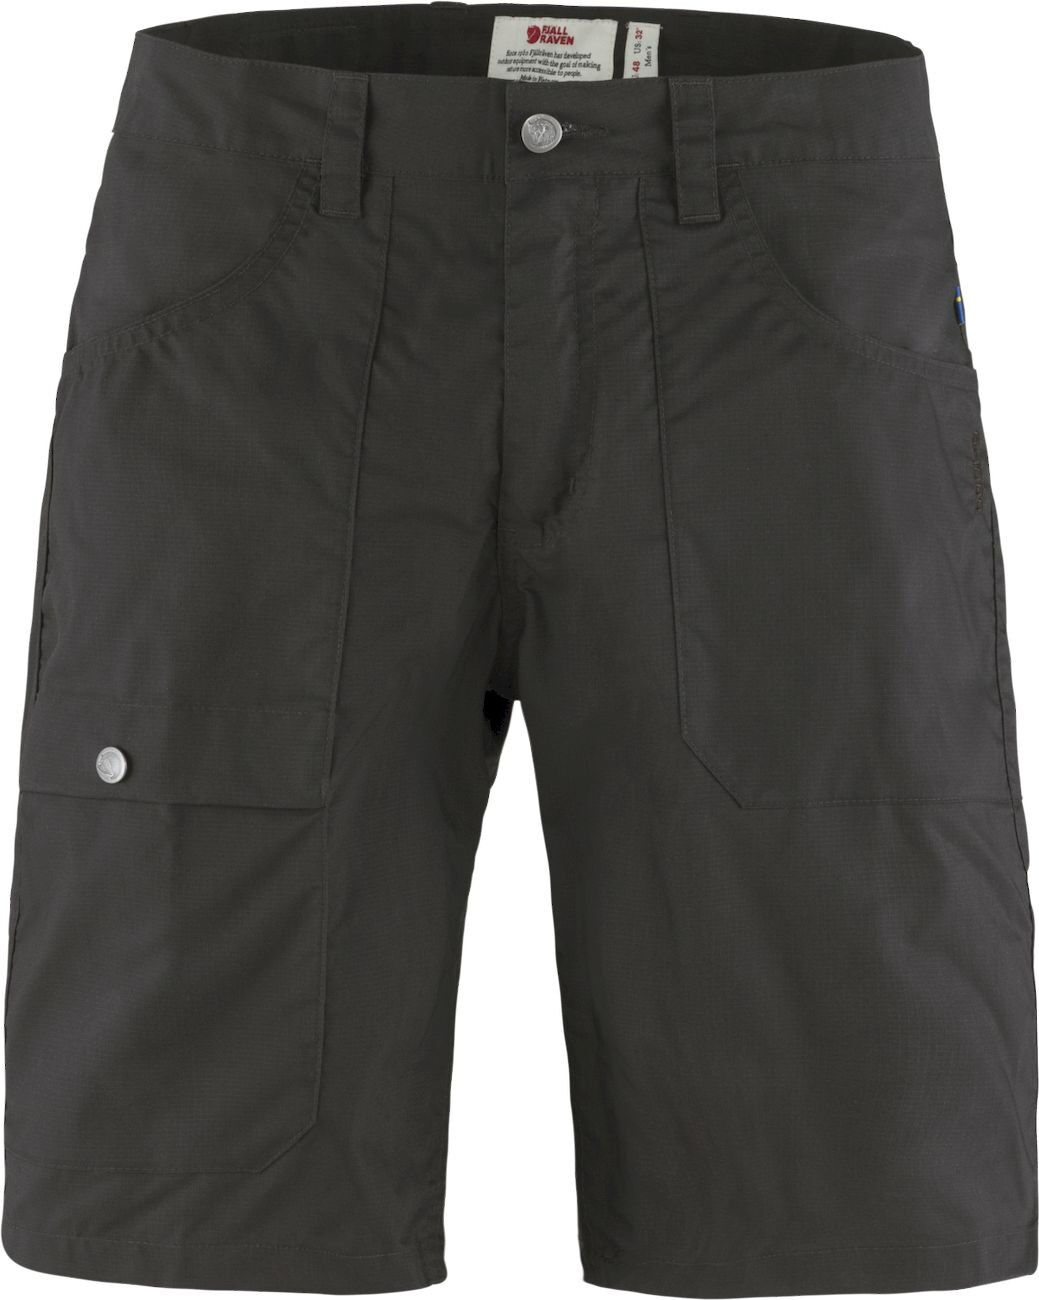 Fjällräven Vardag Lite Shorts - Shorts - Men's